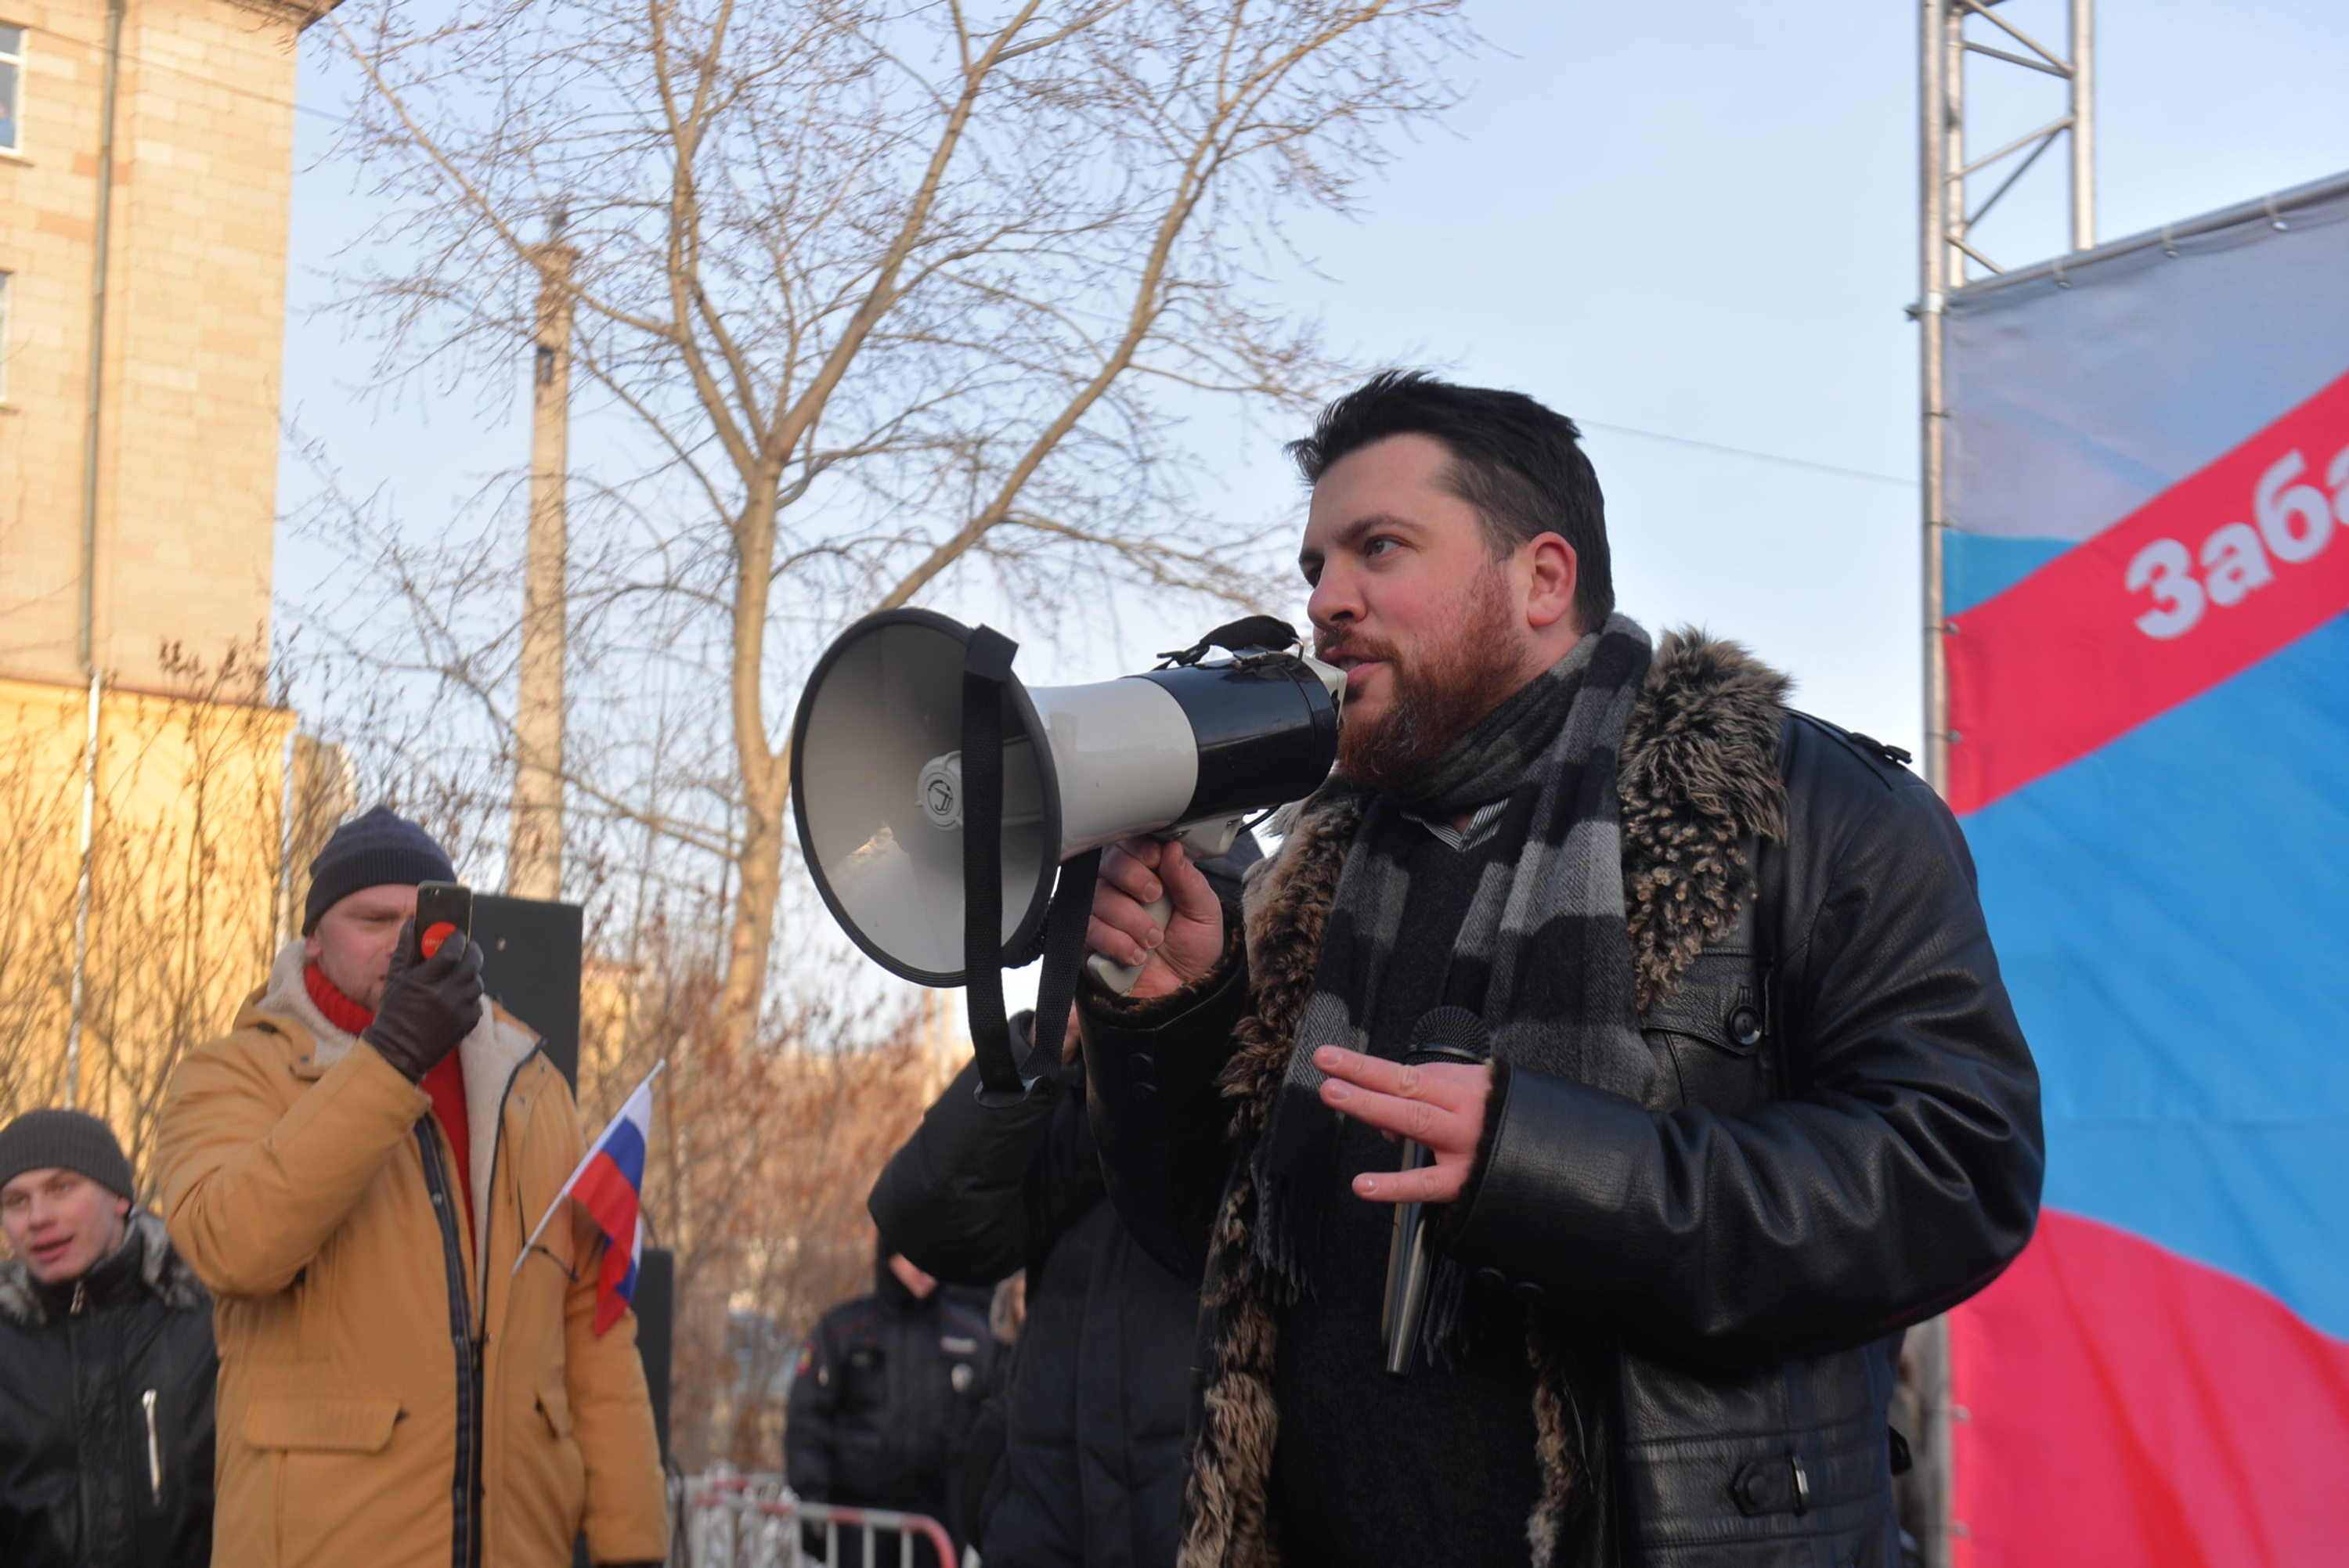 Бастующих вел за собой Леонид Волков, руководитель предвыборного штаба Навального